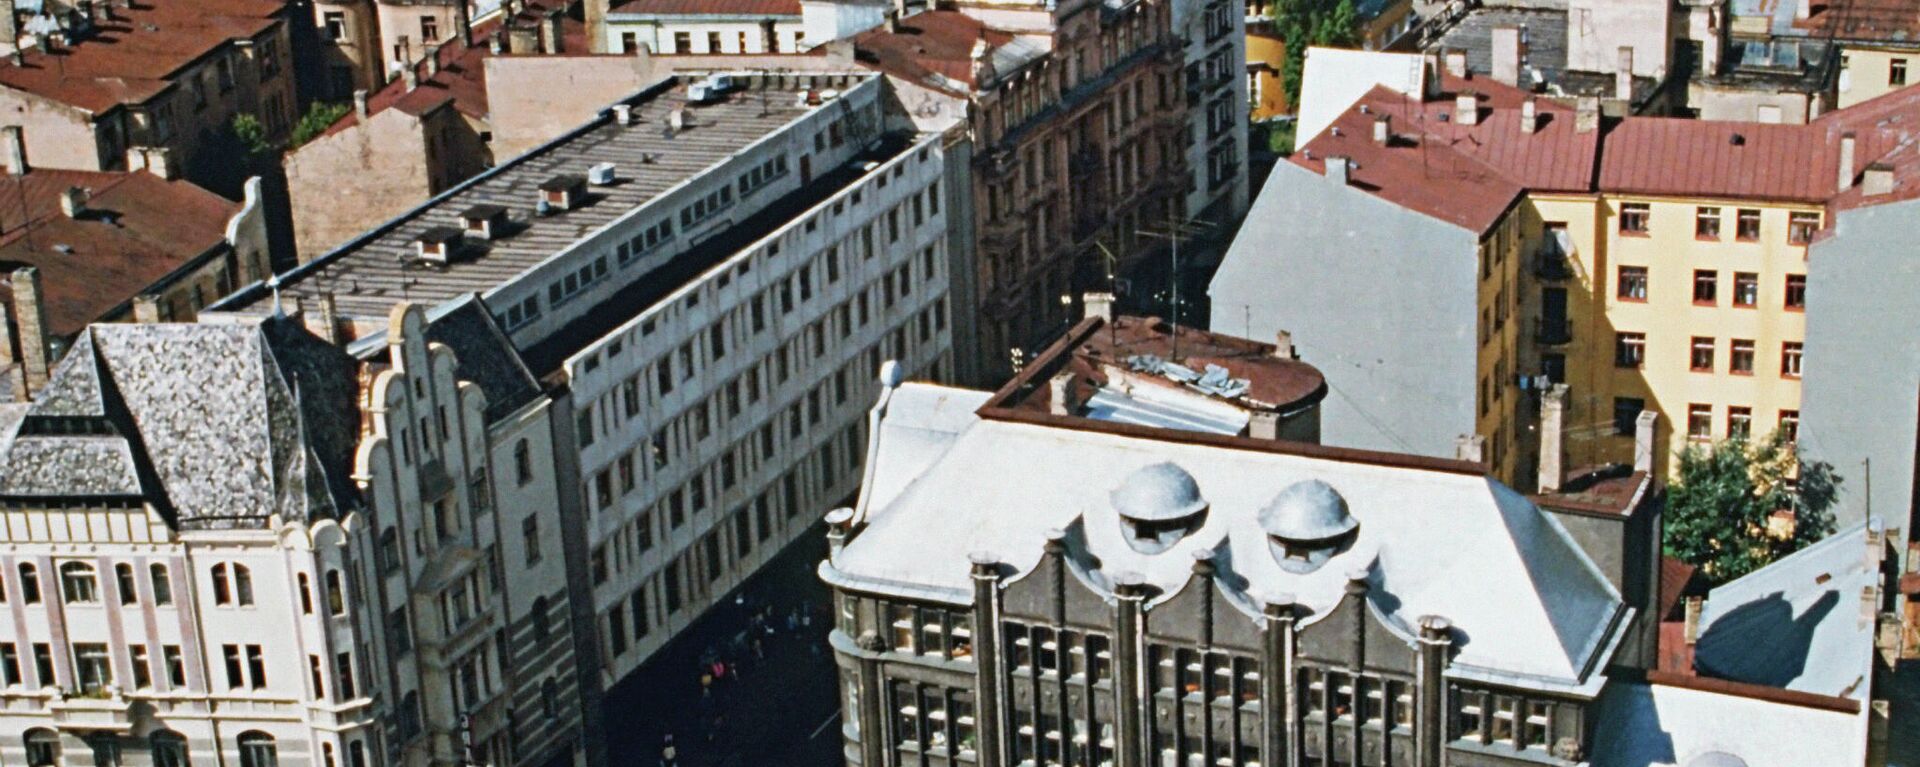 Панорама города Рига в Латвии, 1990 год - Sputnik Latvija, 1920, 22.10.2021